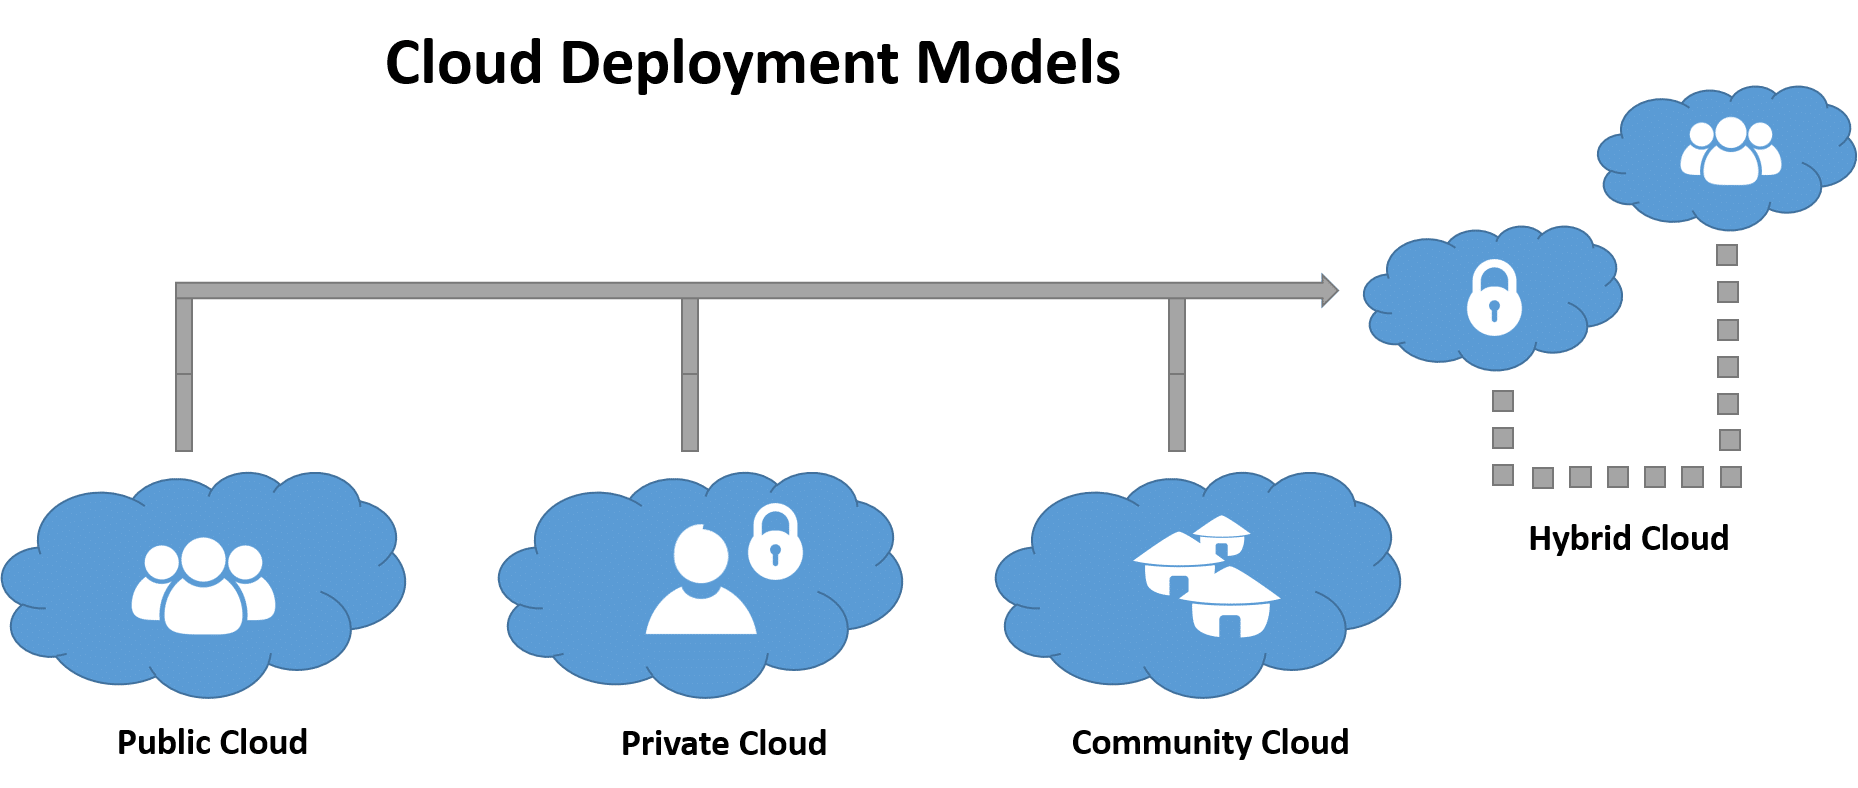 Cloud Deployment Structures Diagram